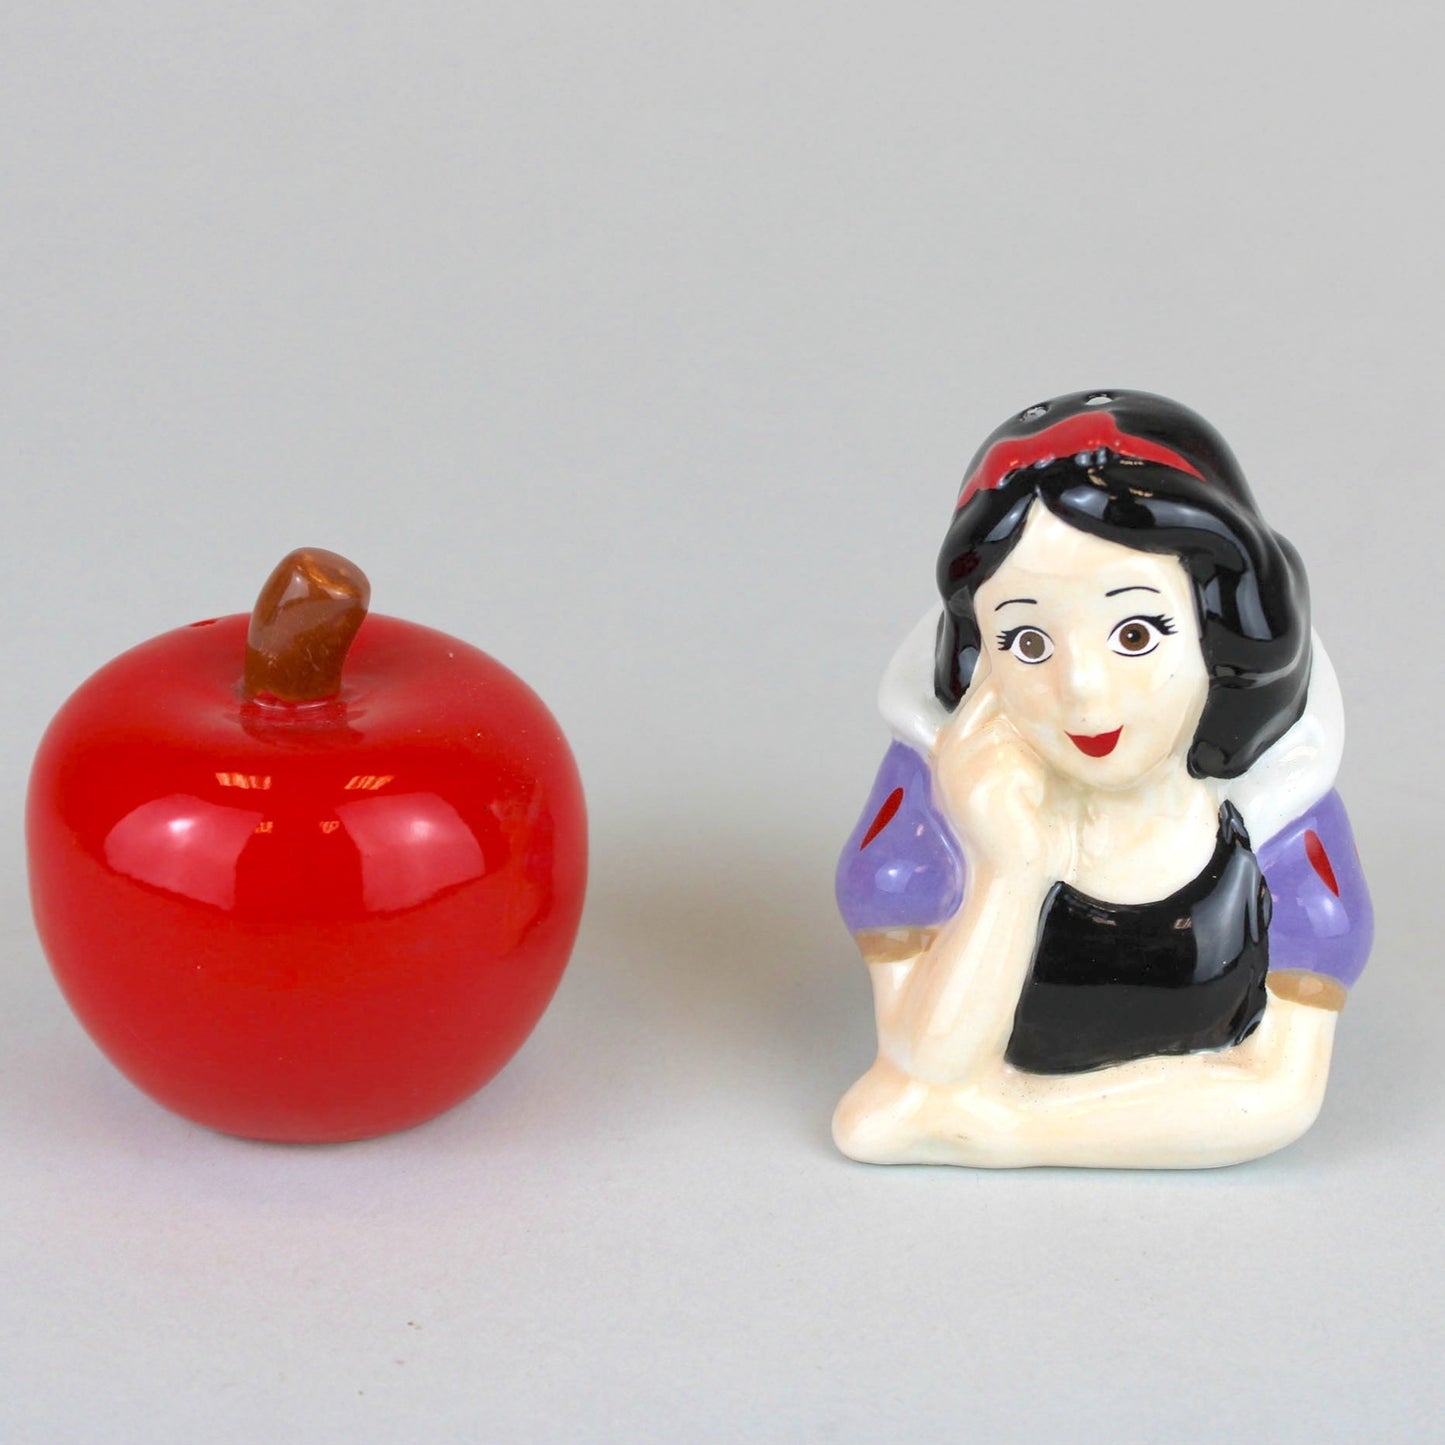 Snow White & Apple (Snow White and the Seven Dwarfs) Disney Ceramic Salt & Pepper Shaker Set